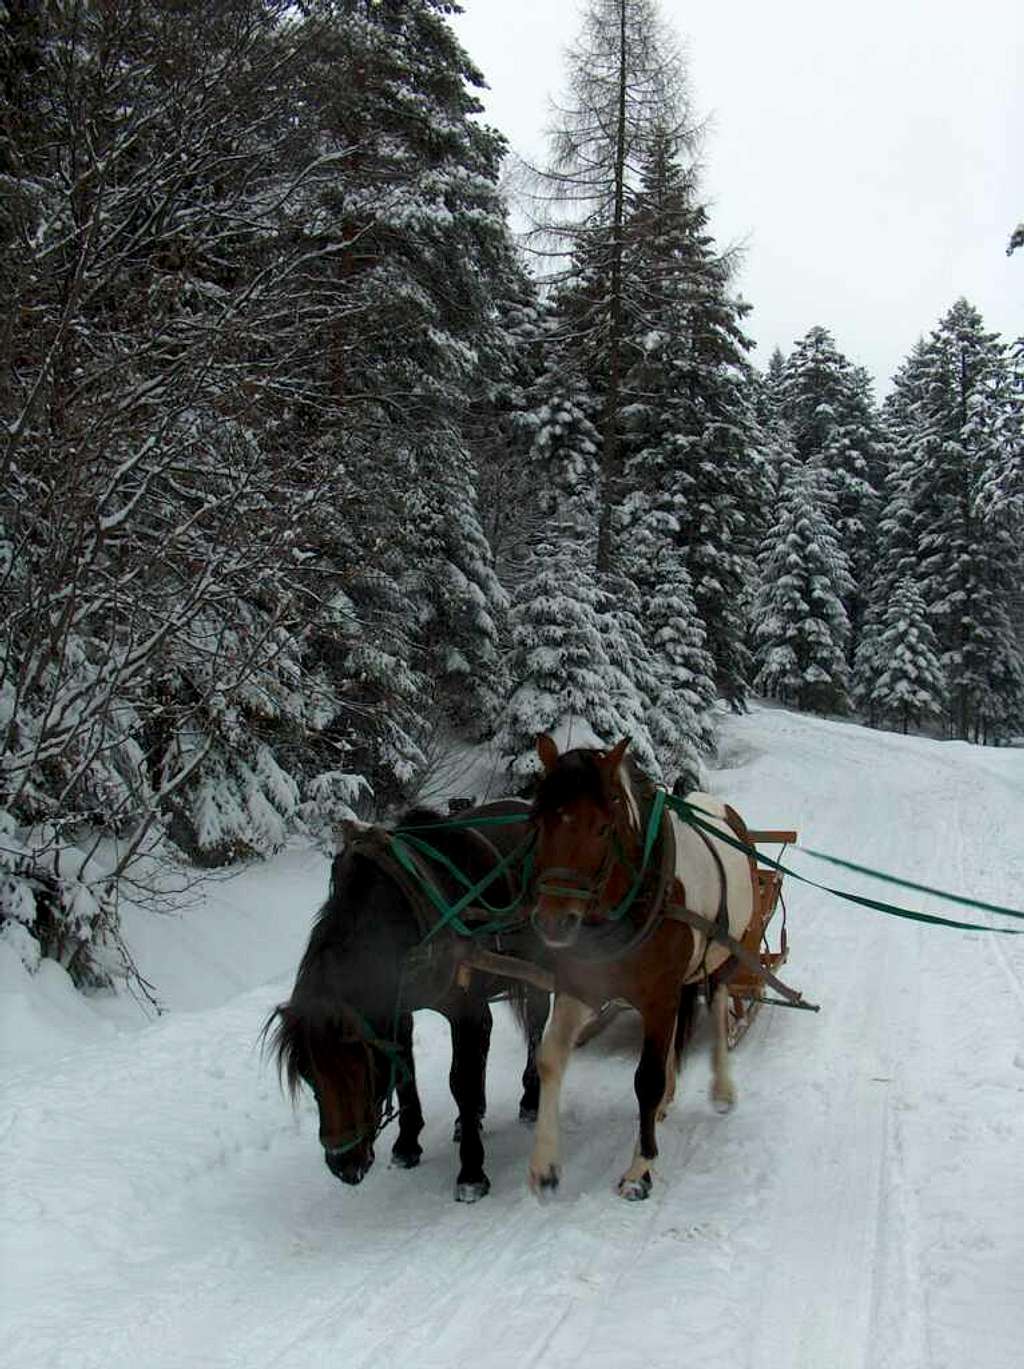 Kulig in winter in the Beskid Niski